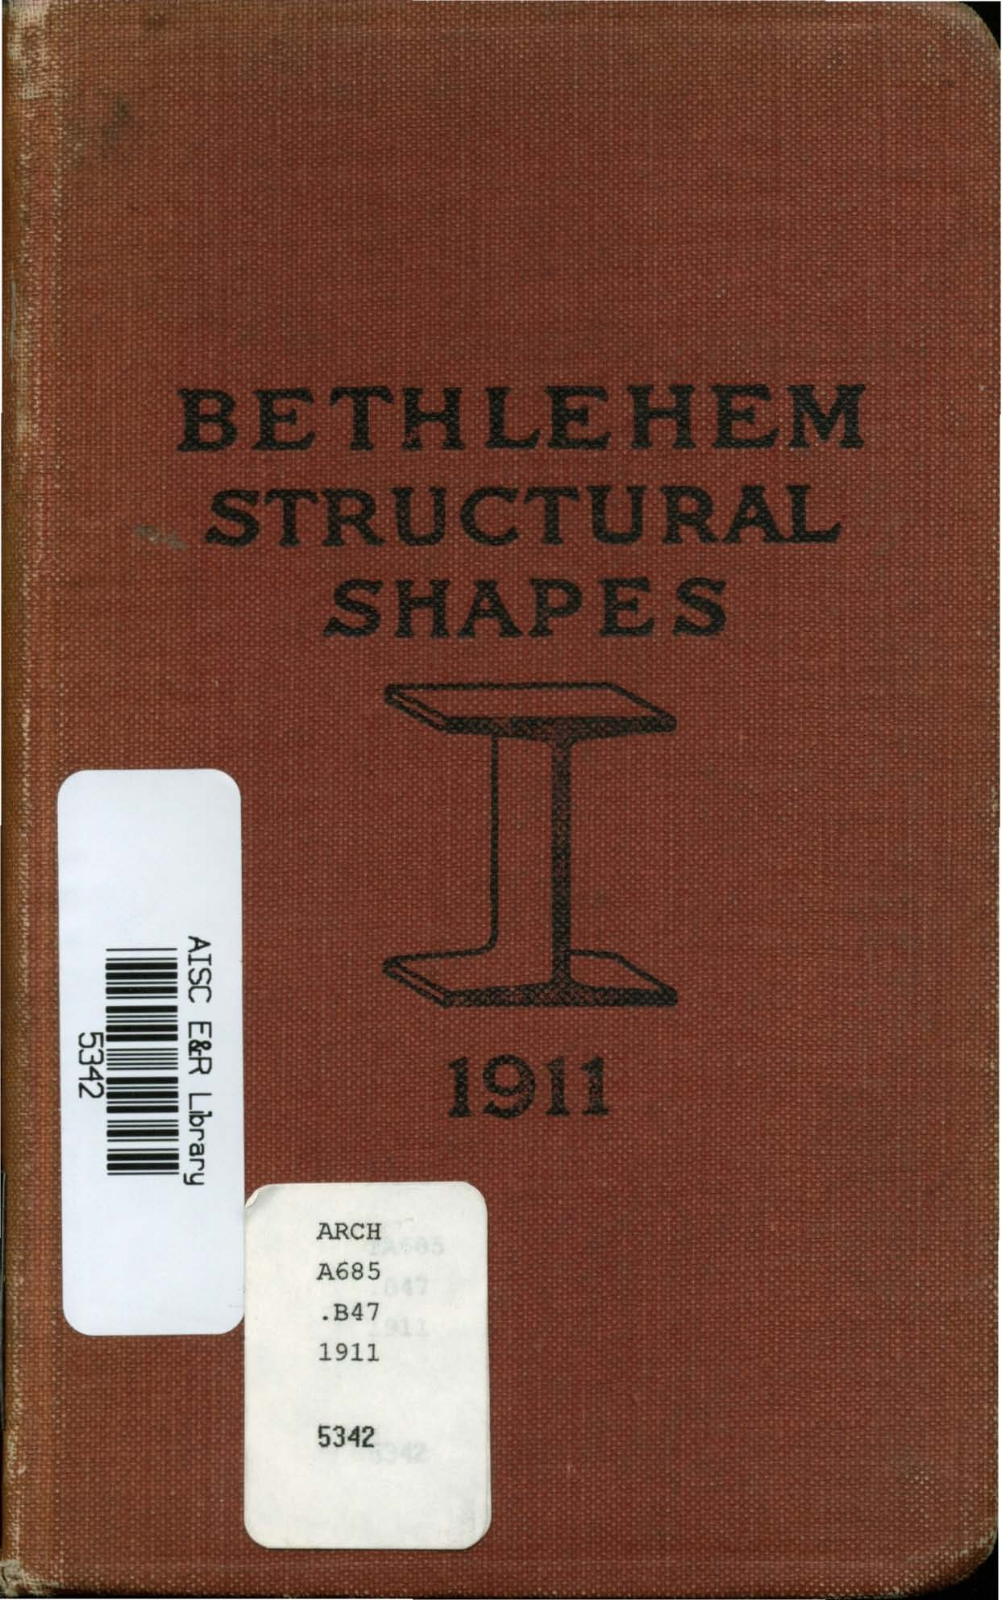 Bethlehem Steel Structural shapes User Manual